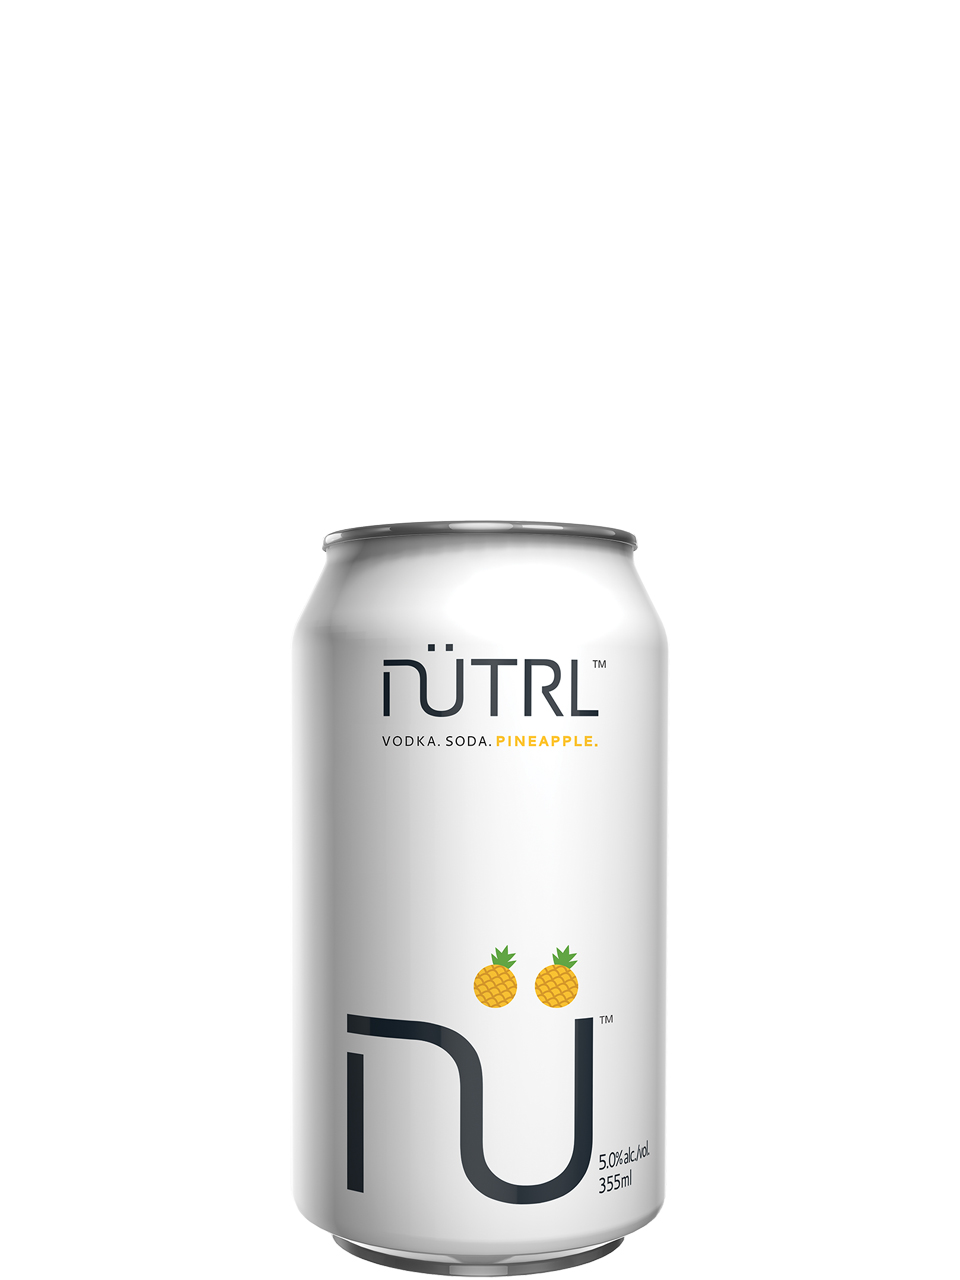 NUTRL Vodka Soda Pineapple 6 Pack Cans